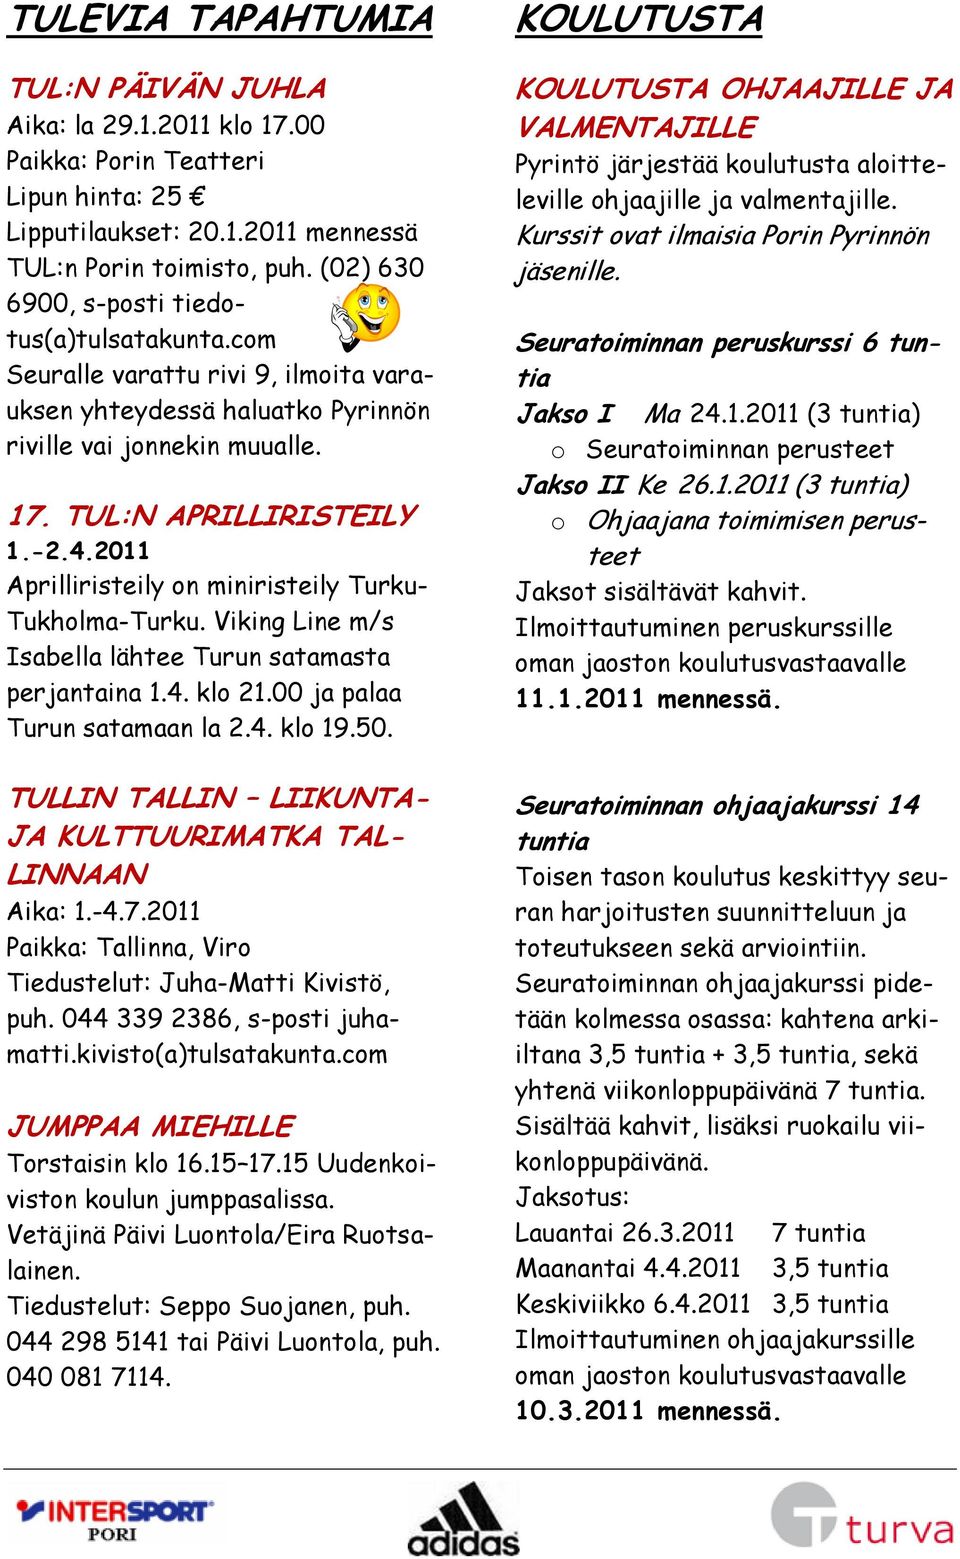 2011 Aprilliristeily on miniristeily Turku- Tukholma-Turku. Viking Line m/s Isabella lähtee Turun satamasta perjantaina 1.4. klo 21.00 ja palaa Turun satamaan la 2.4. klo 19.50.